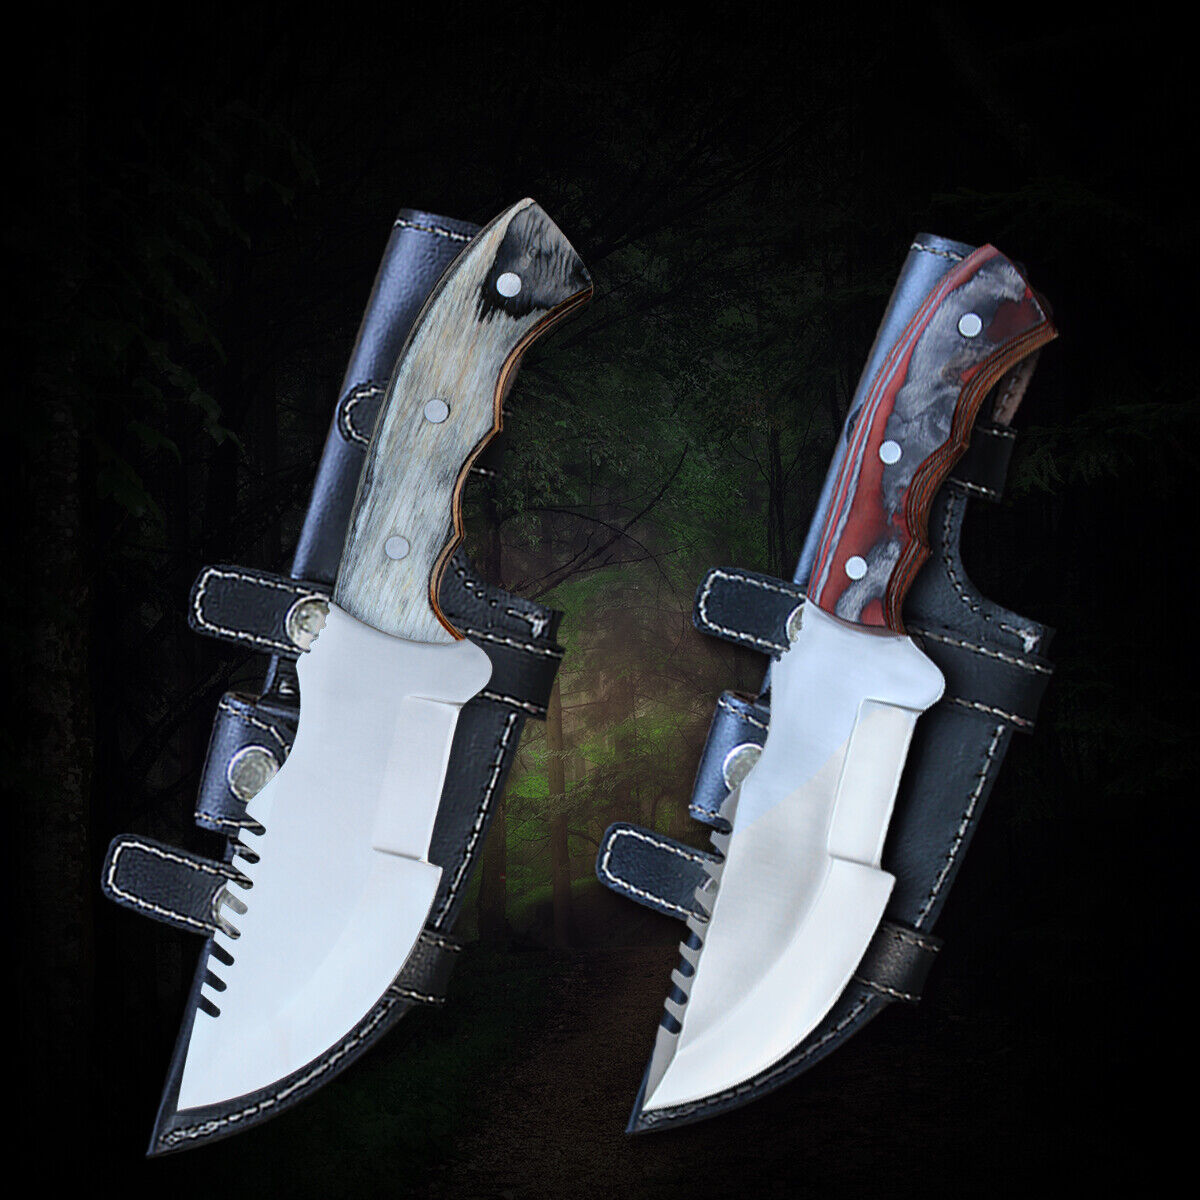 TRACKER® Stainless Steel knife 2 pcs Set Survival Knife Gift, Hunting knife Gift